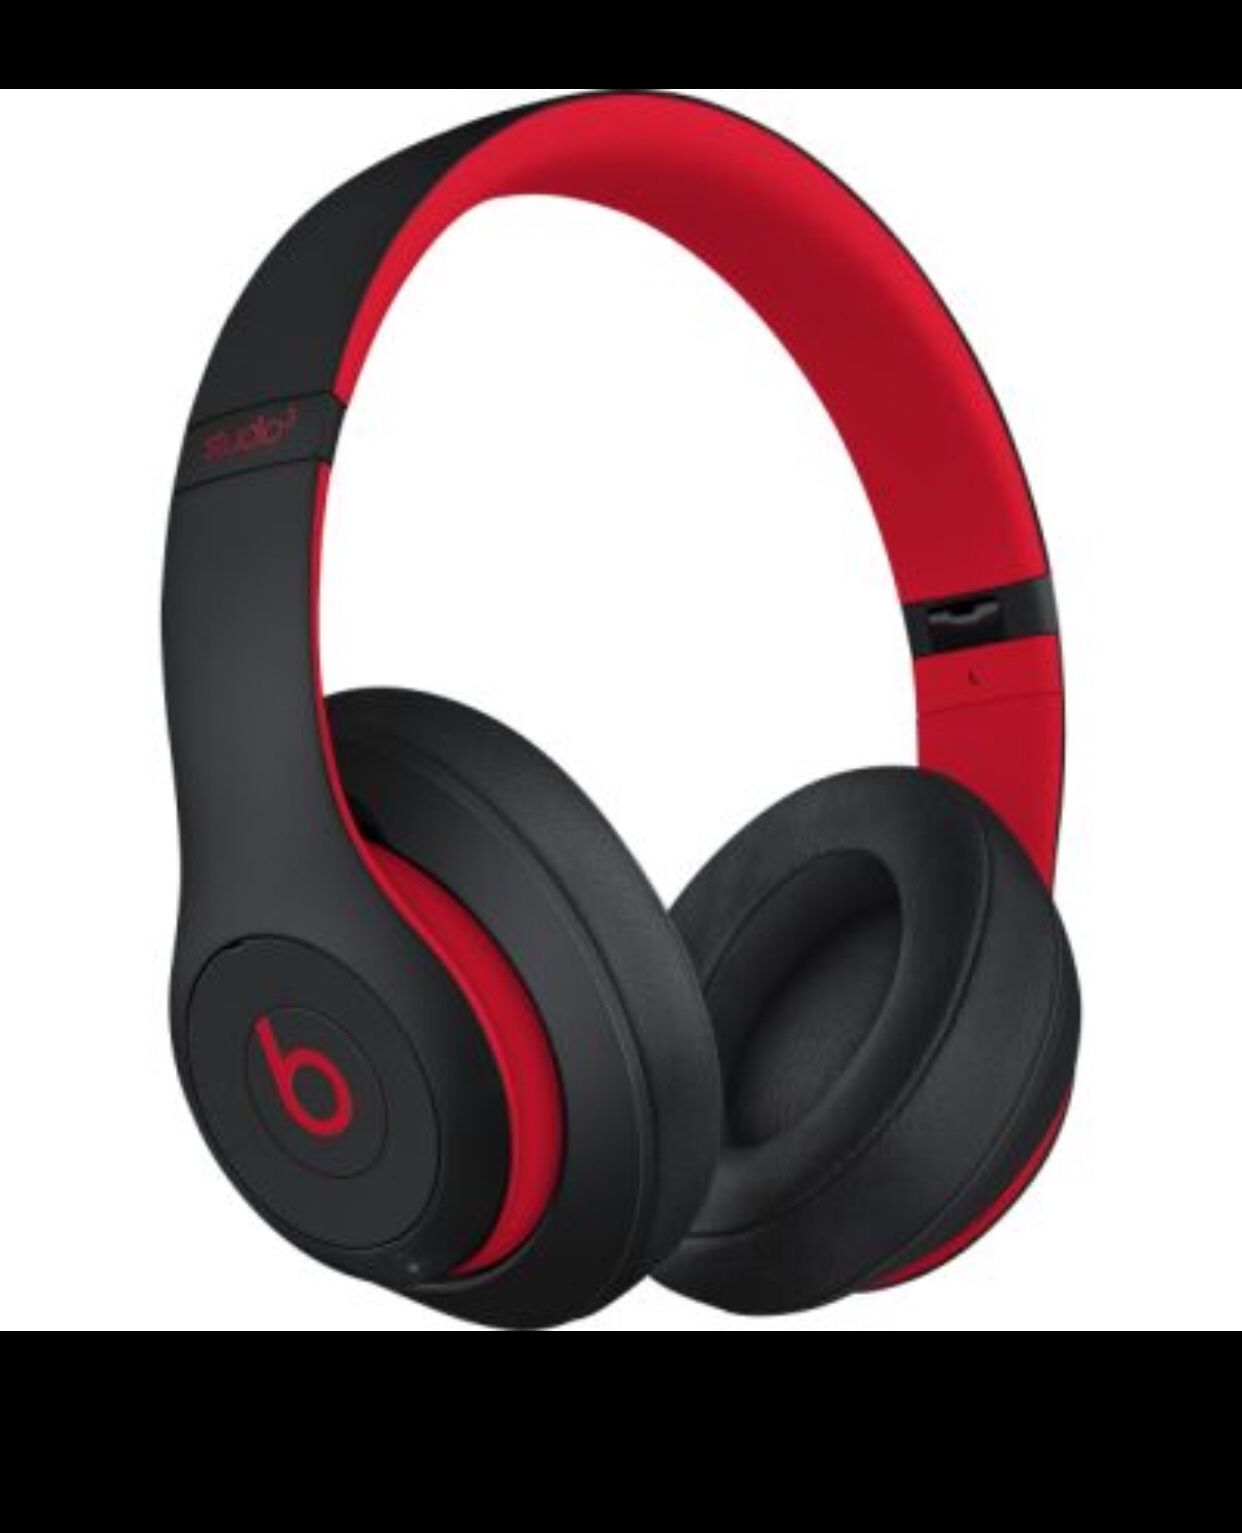 Beats studio3 wireless headphones defiant black and red